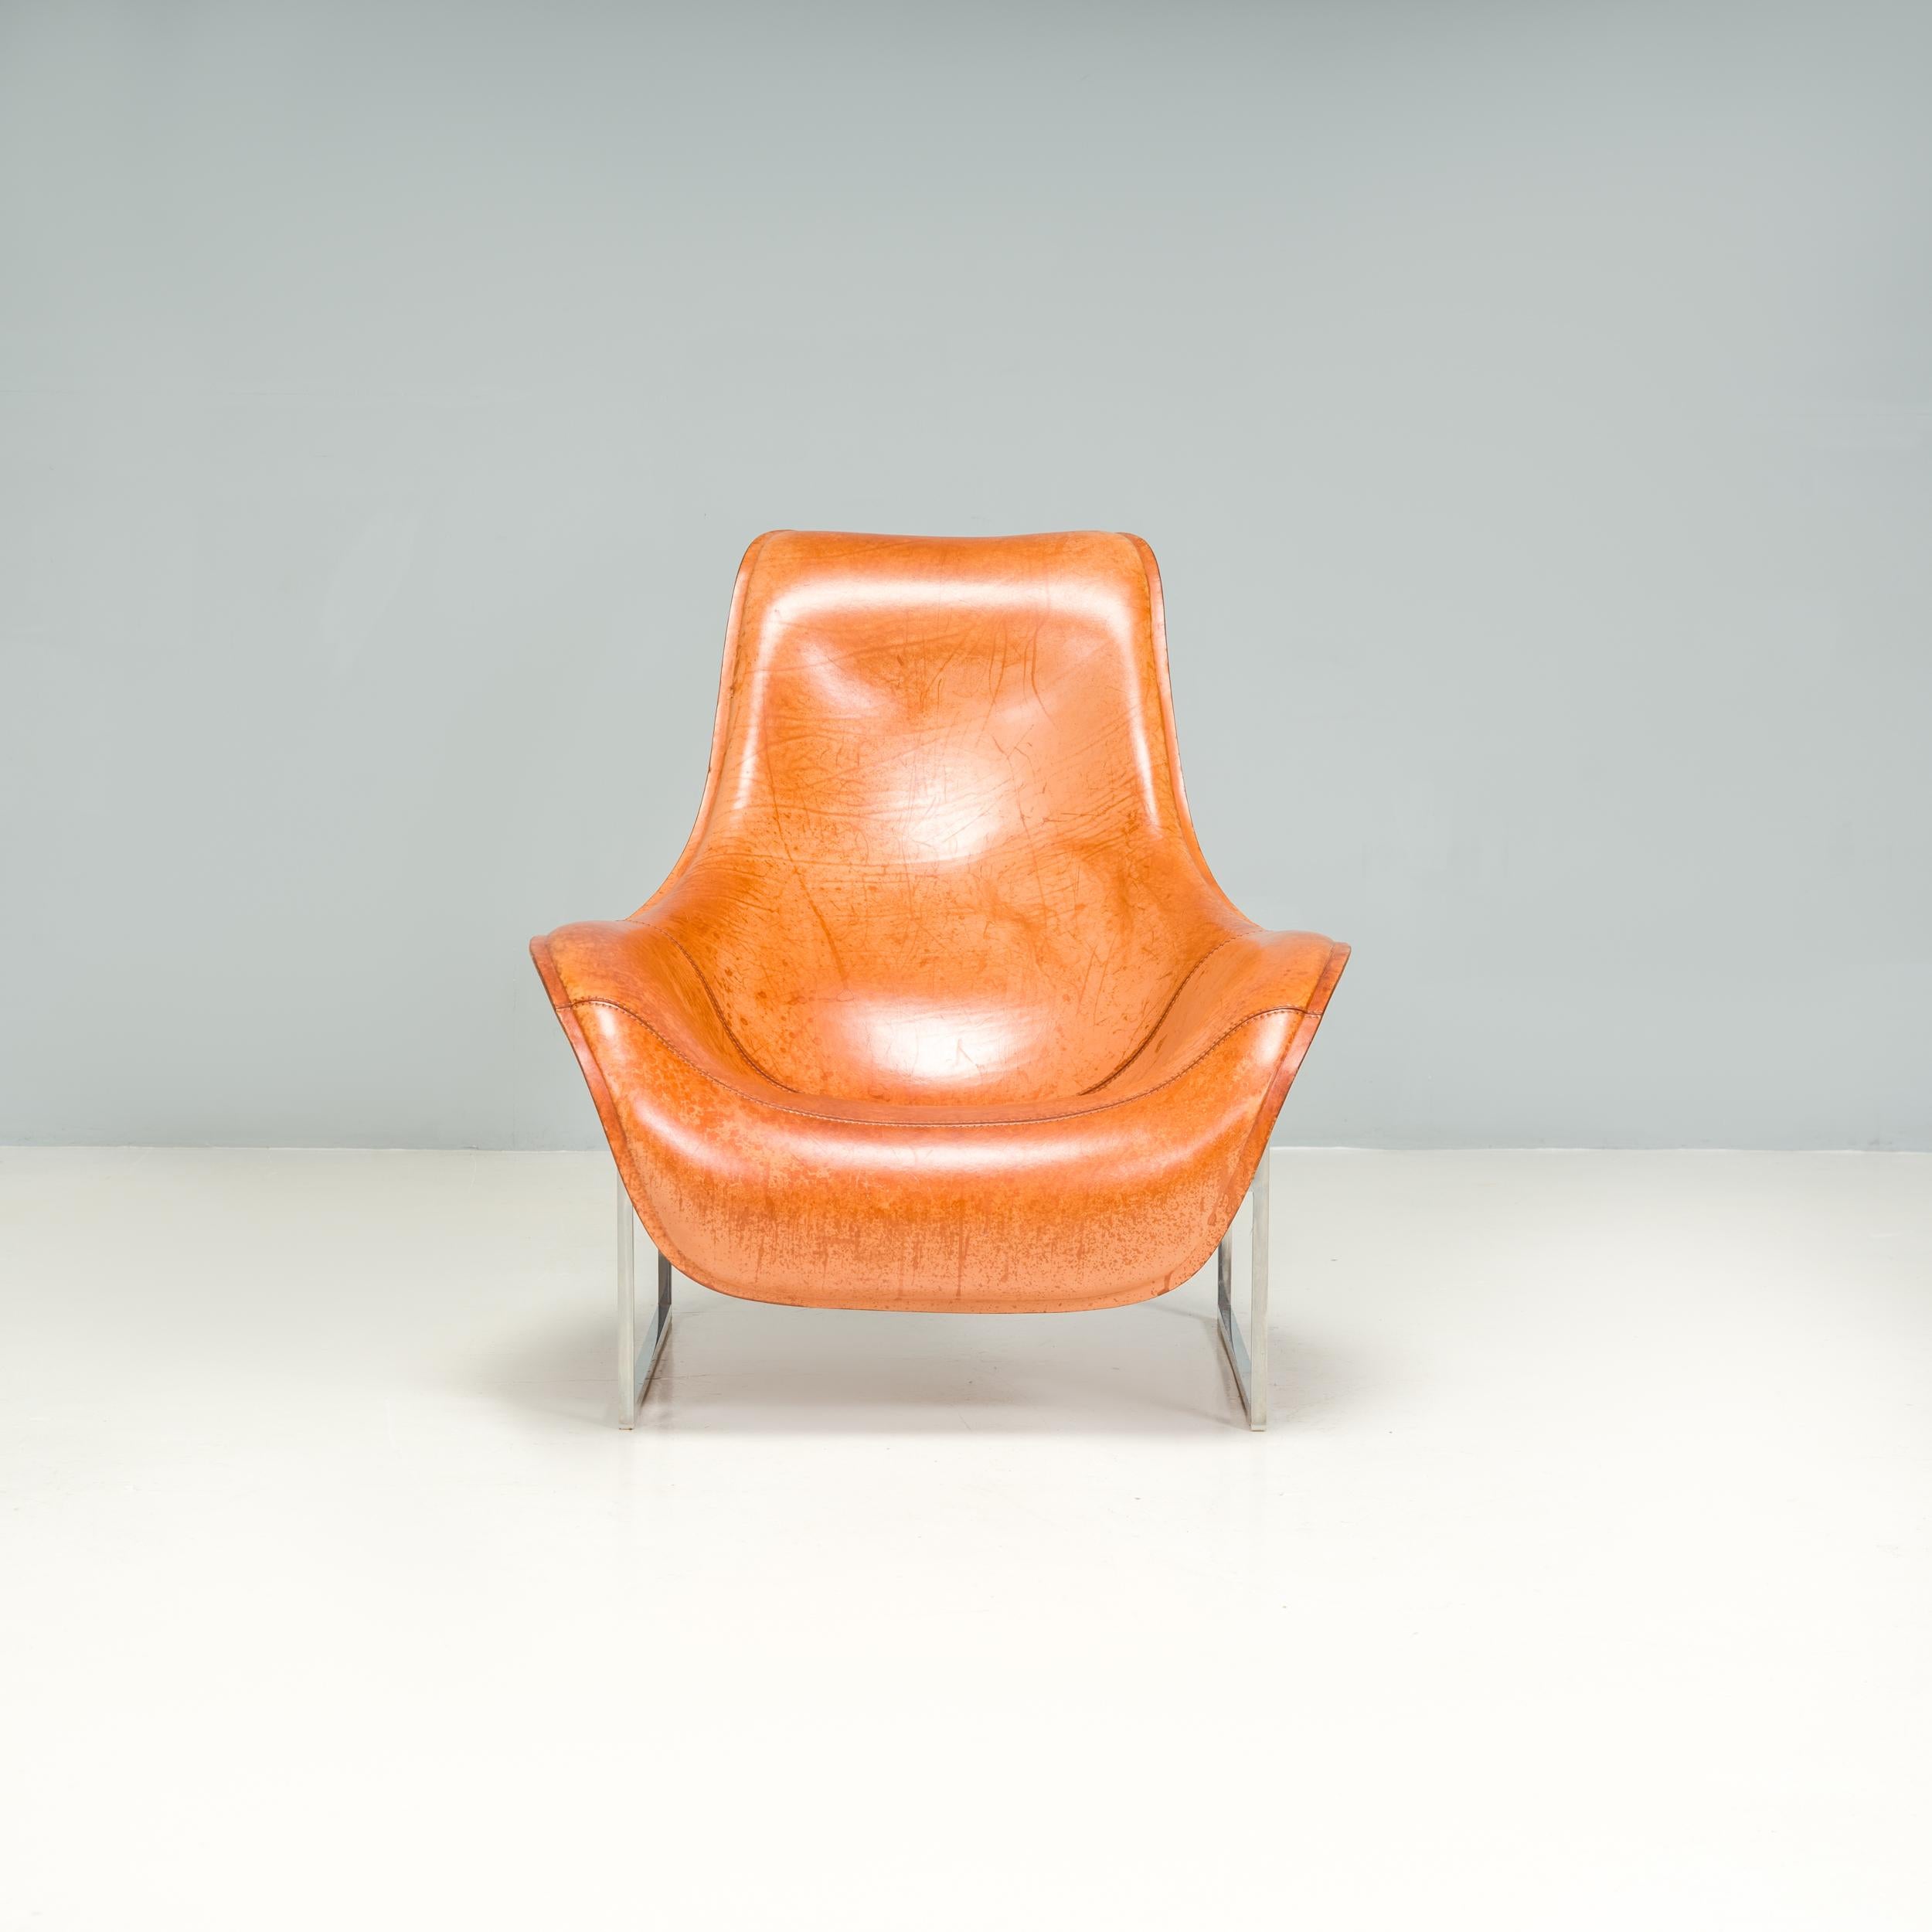 Conçue à l'origine par Antonio Citterio pour B&B Italia en 2003, la chaise longue inclinable Mart est un fantastique exemple de design moderne.

La silhouette sinueuse est créée grâce à l'utilisation de mousse de polyuréthane façonnée et de cuir